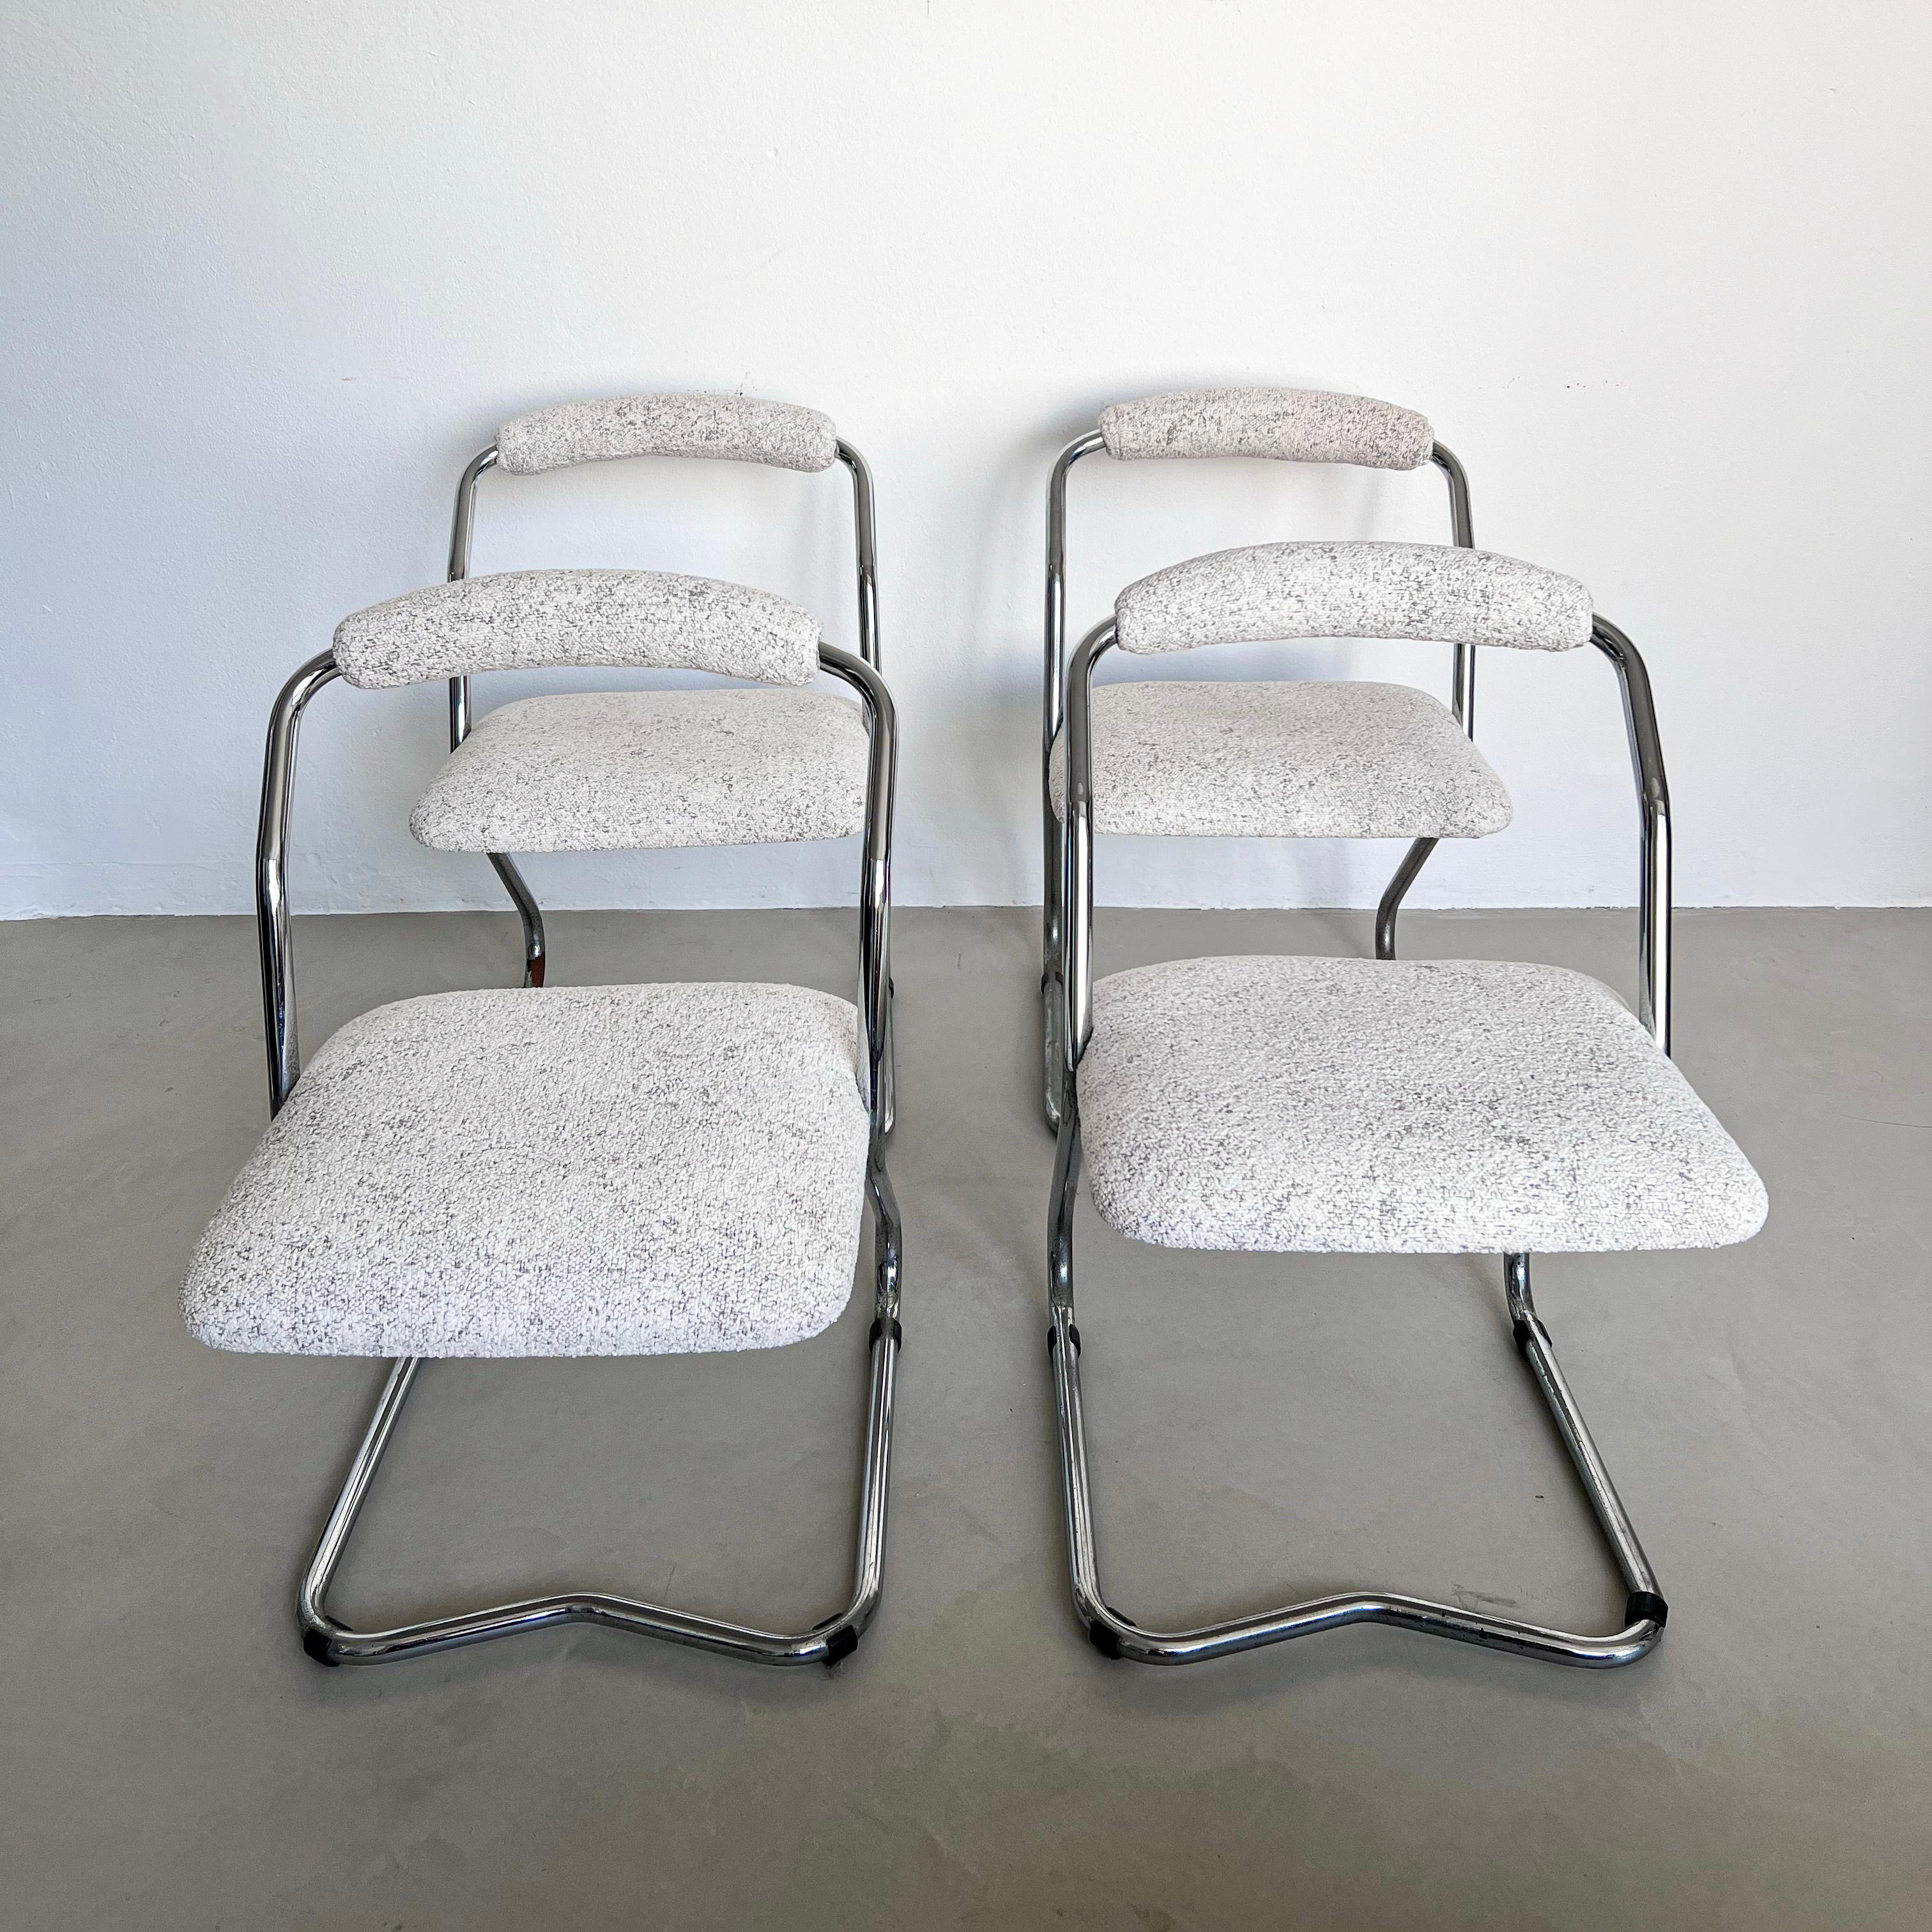 Ensemble de quatre chaises de salle à manger rares, fabriquées en Italie dans les années 1960 et conçues par Giotto Stoppino.  vient d'être refait dans un magnifique tissu bouclé blanc de Dedar Milano. Fabriquées en métal tubulaire chromé, elles ont